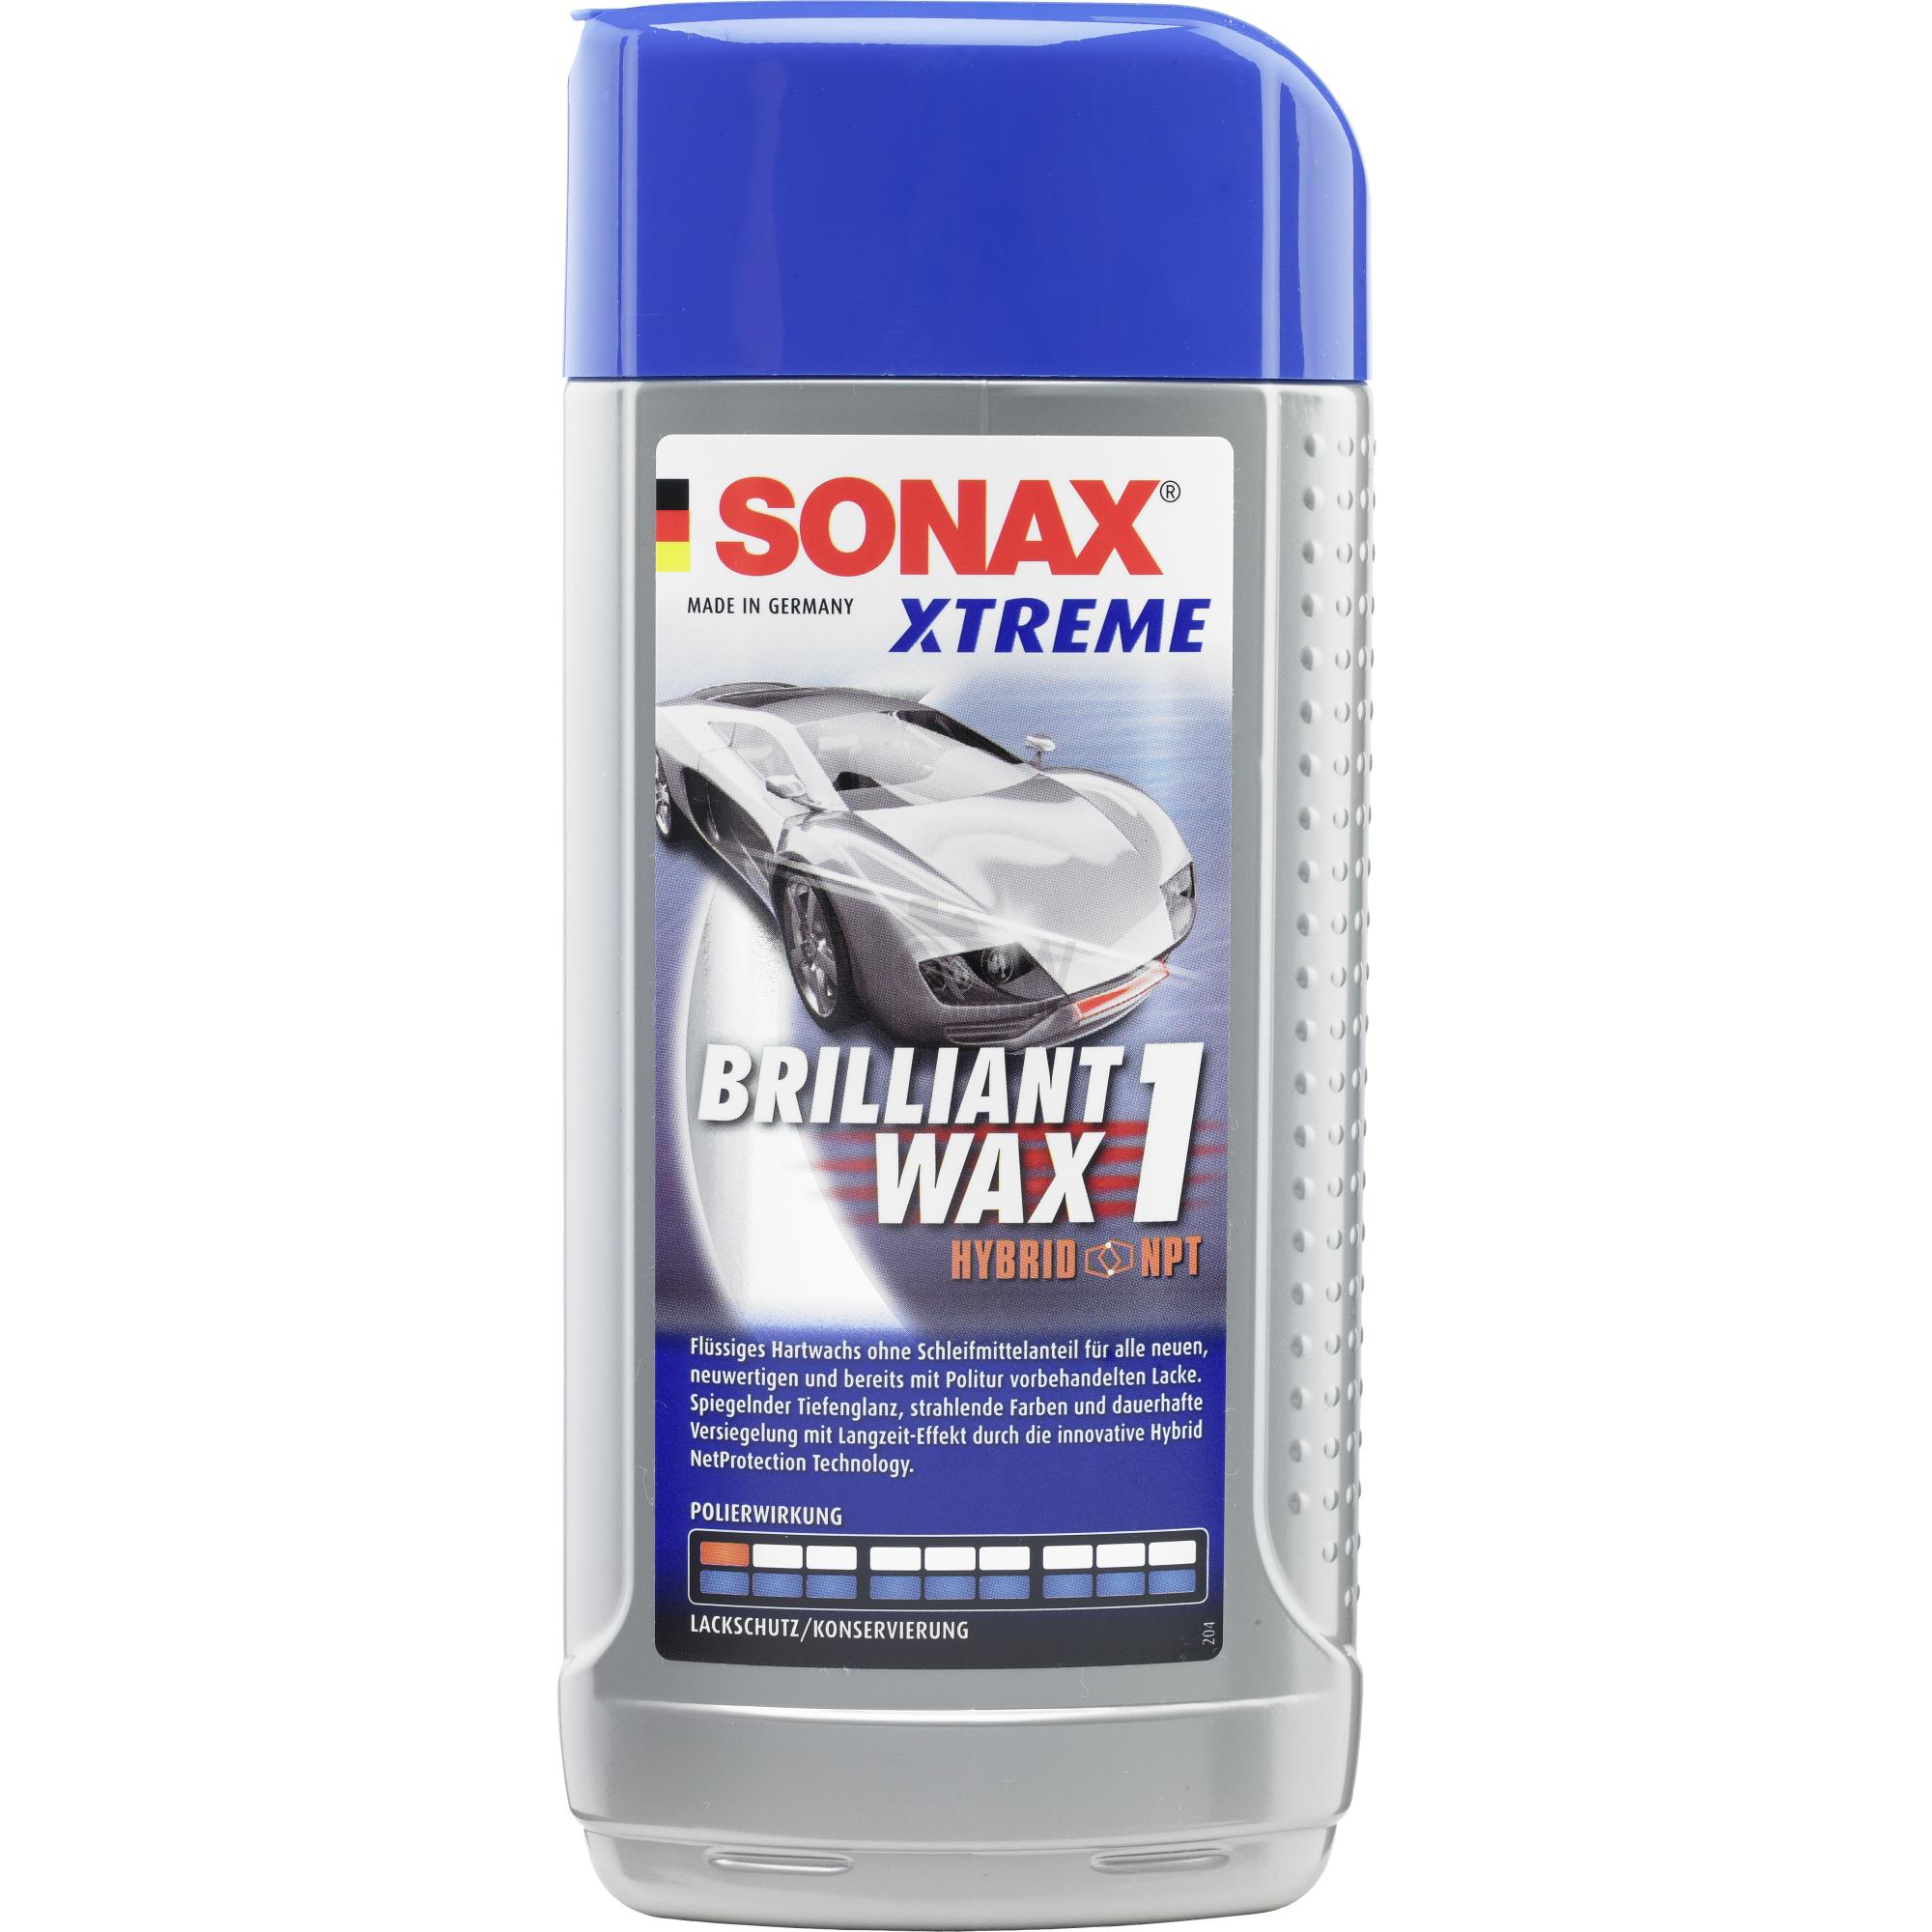 SONAX XTREME BrilliantWax 1 Hybrid NPT Hartwachs Versiegelung 500 ml